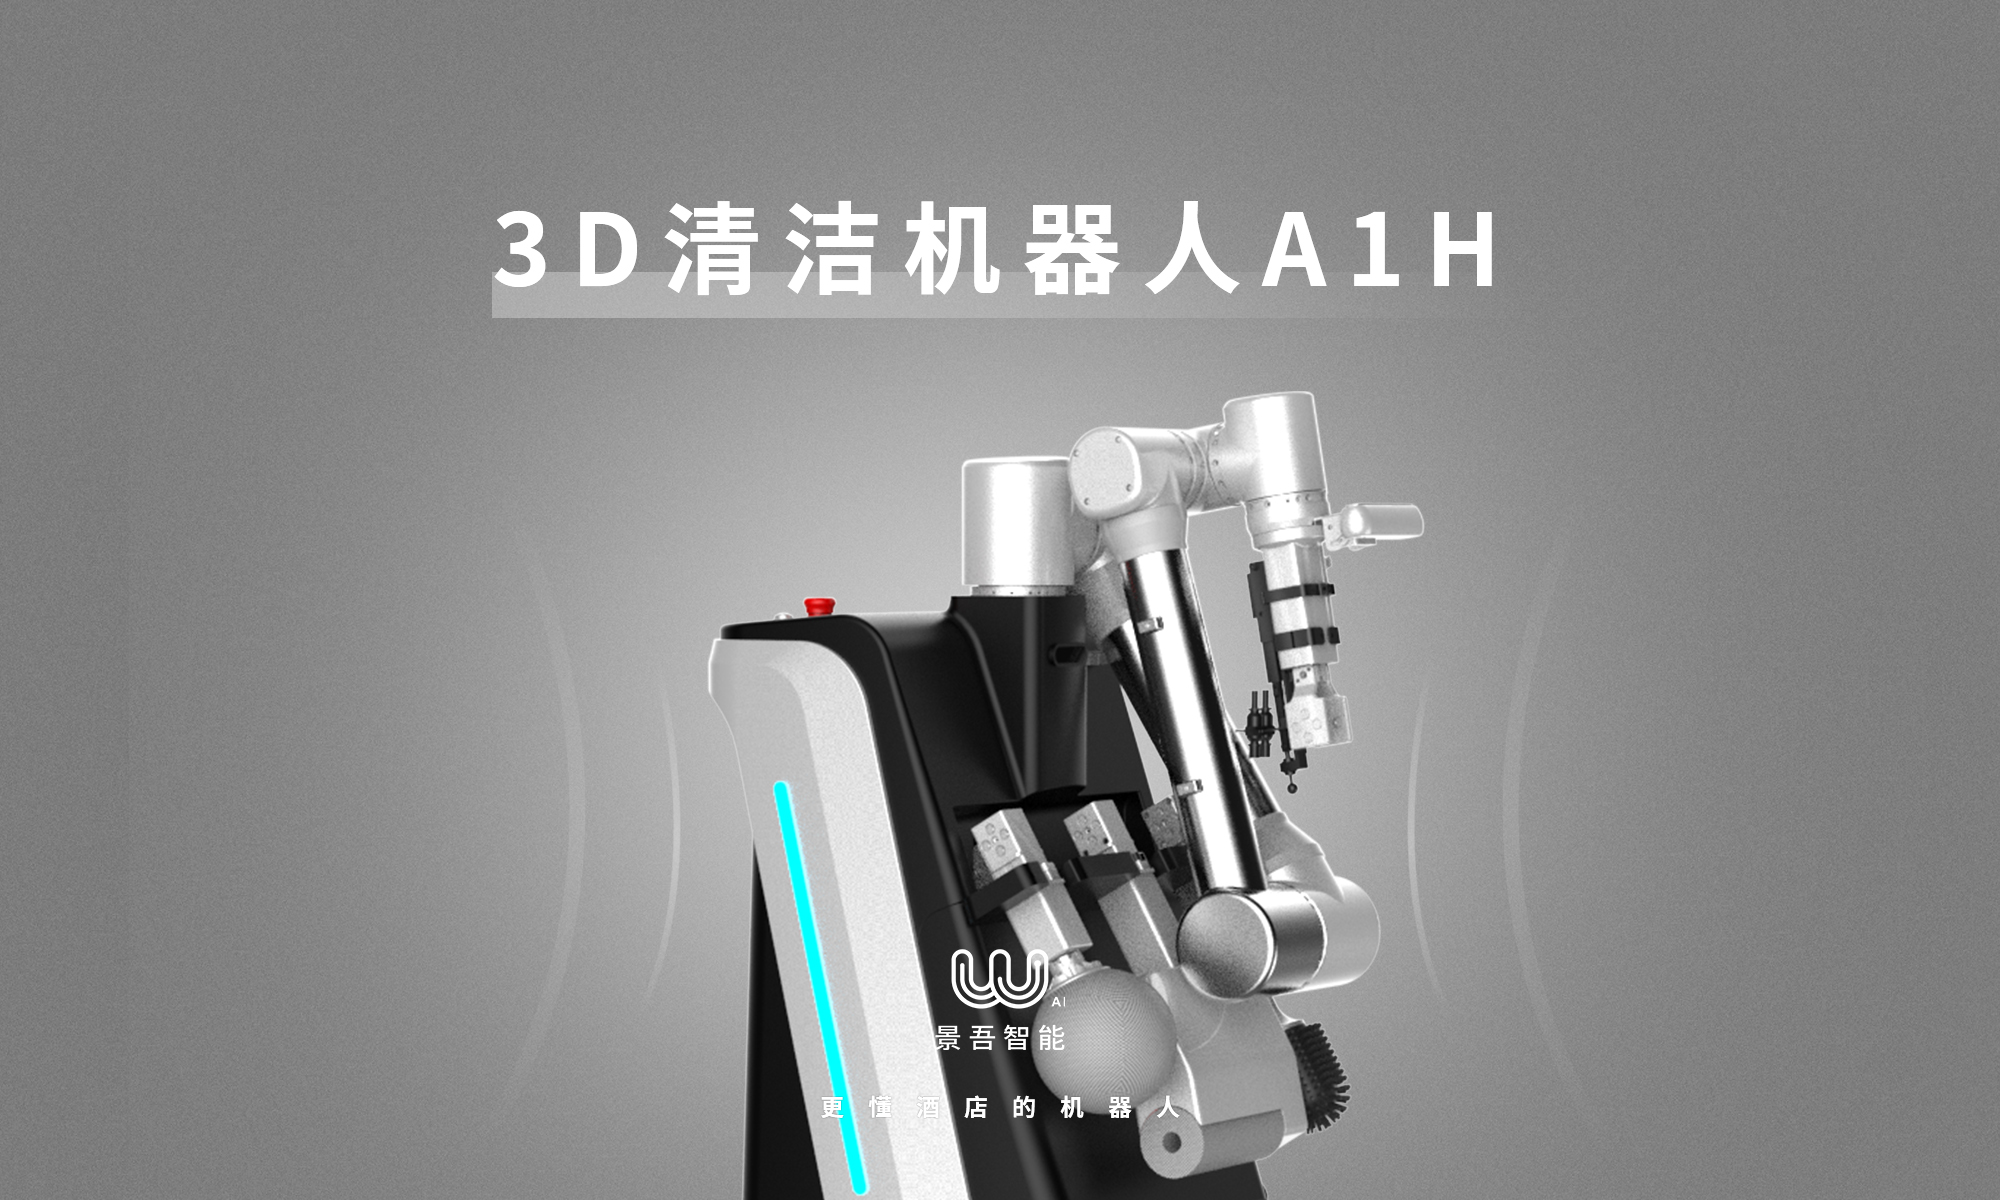 景吾智能 3D清洁机器人A1H